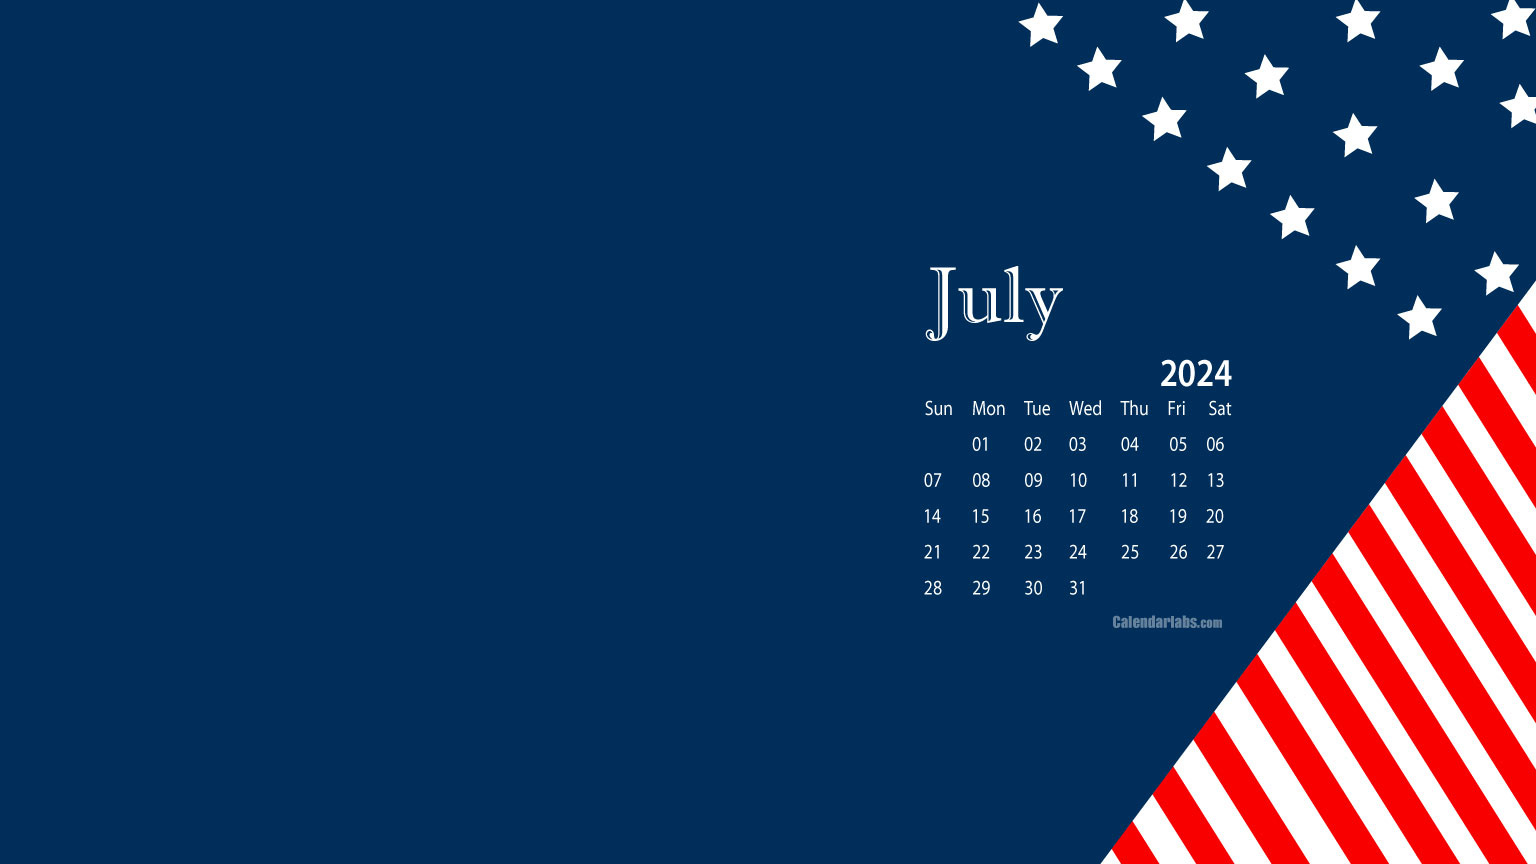 July 2024 Desktop Wallpaper Calendar - Calendarlabs for July Calendar Wallpaper 2024